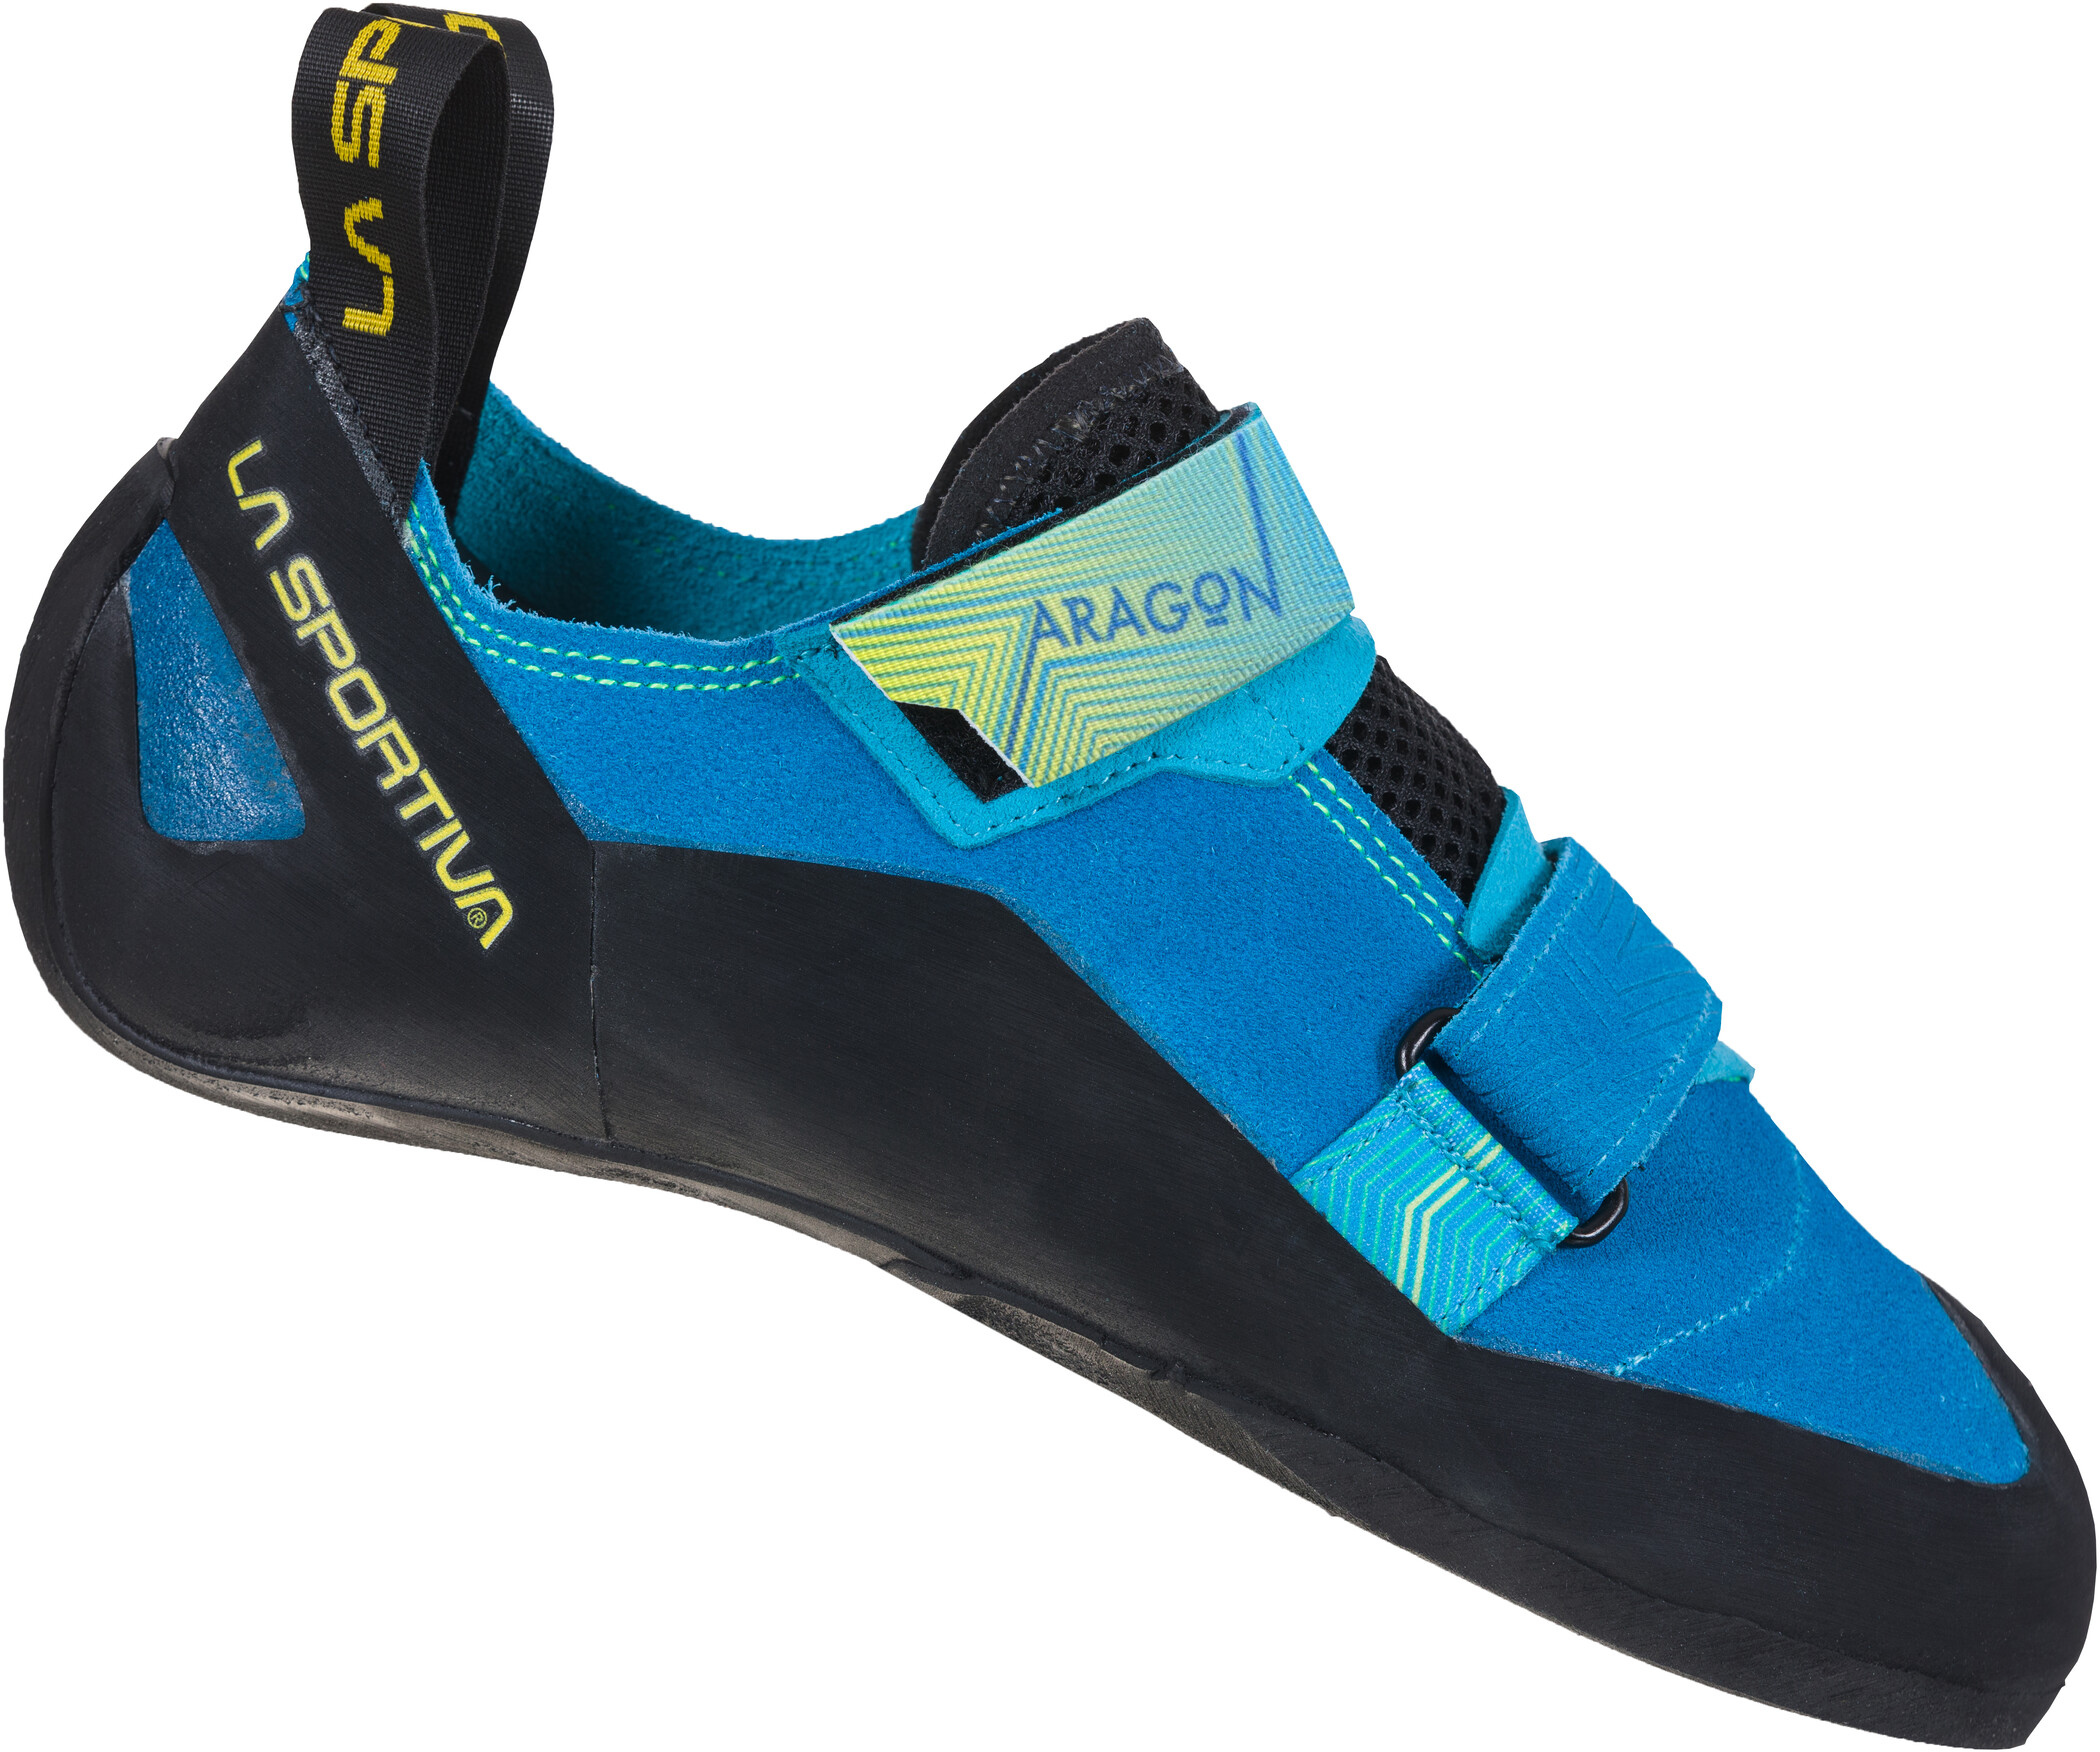 La Sportiva Aragon Kletterschuhe Herren blau/schwarz